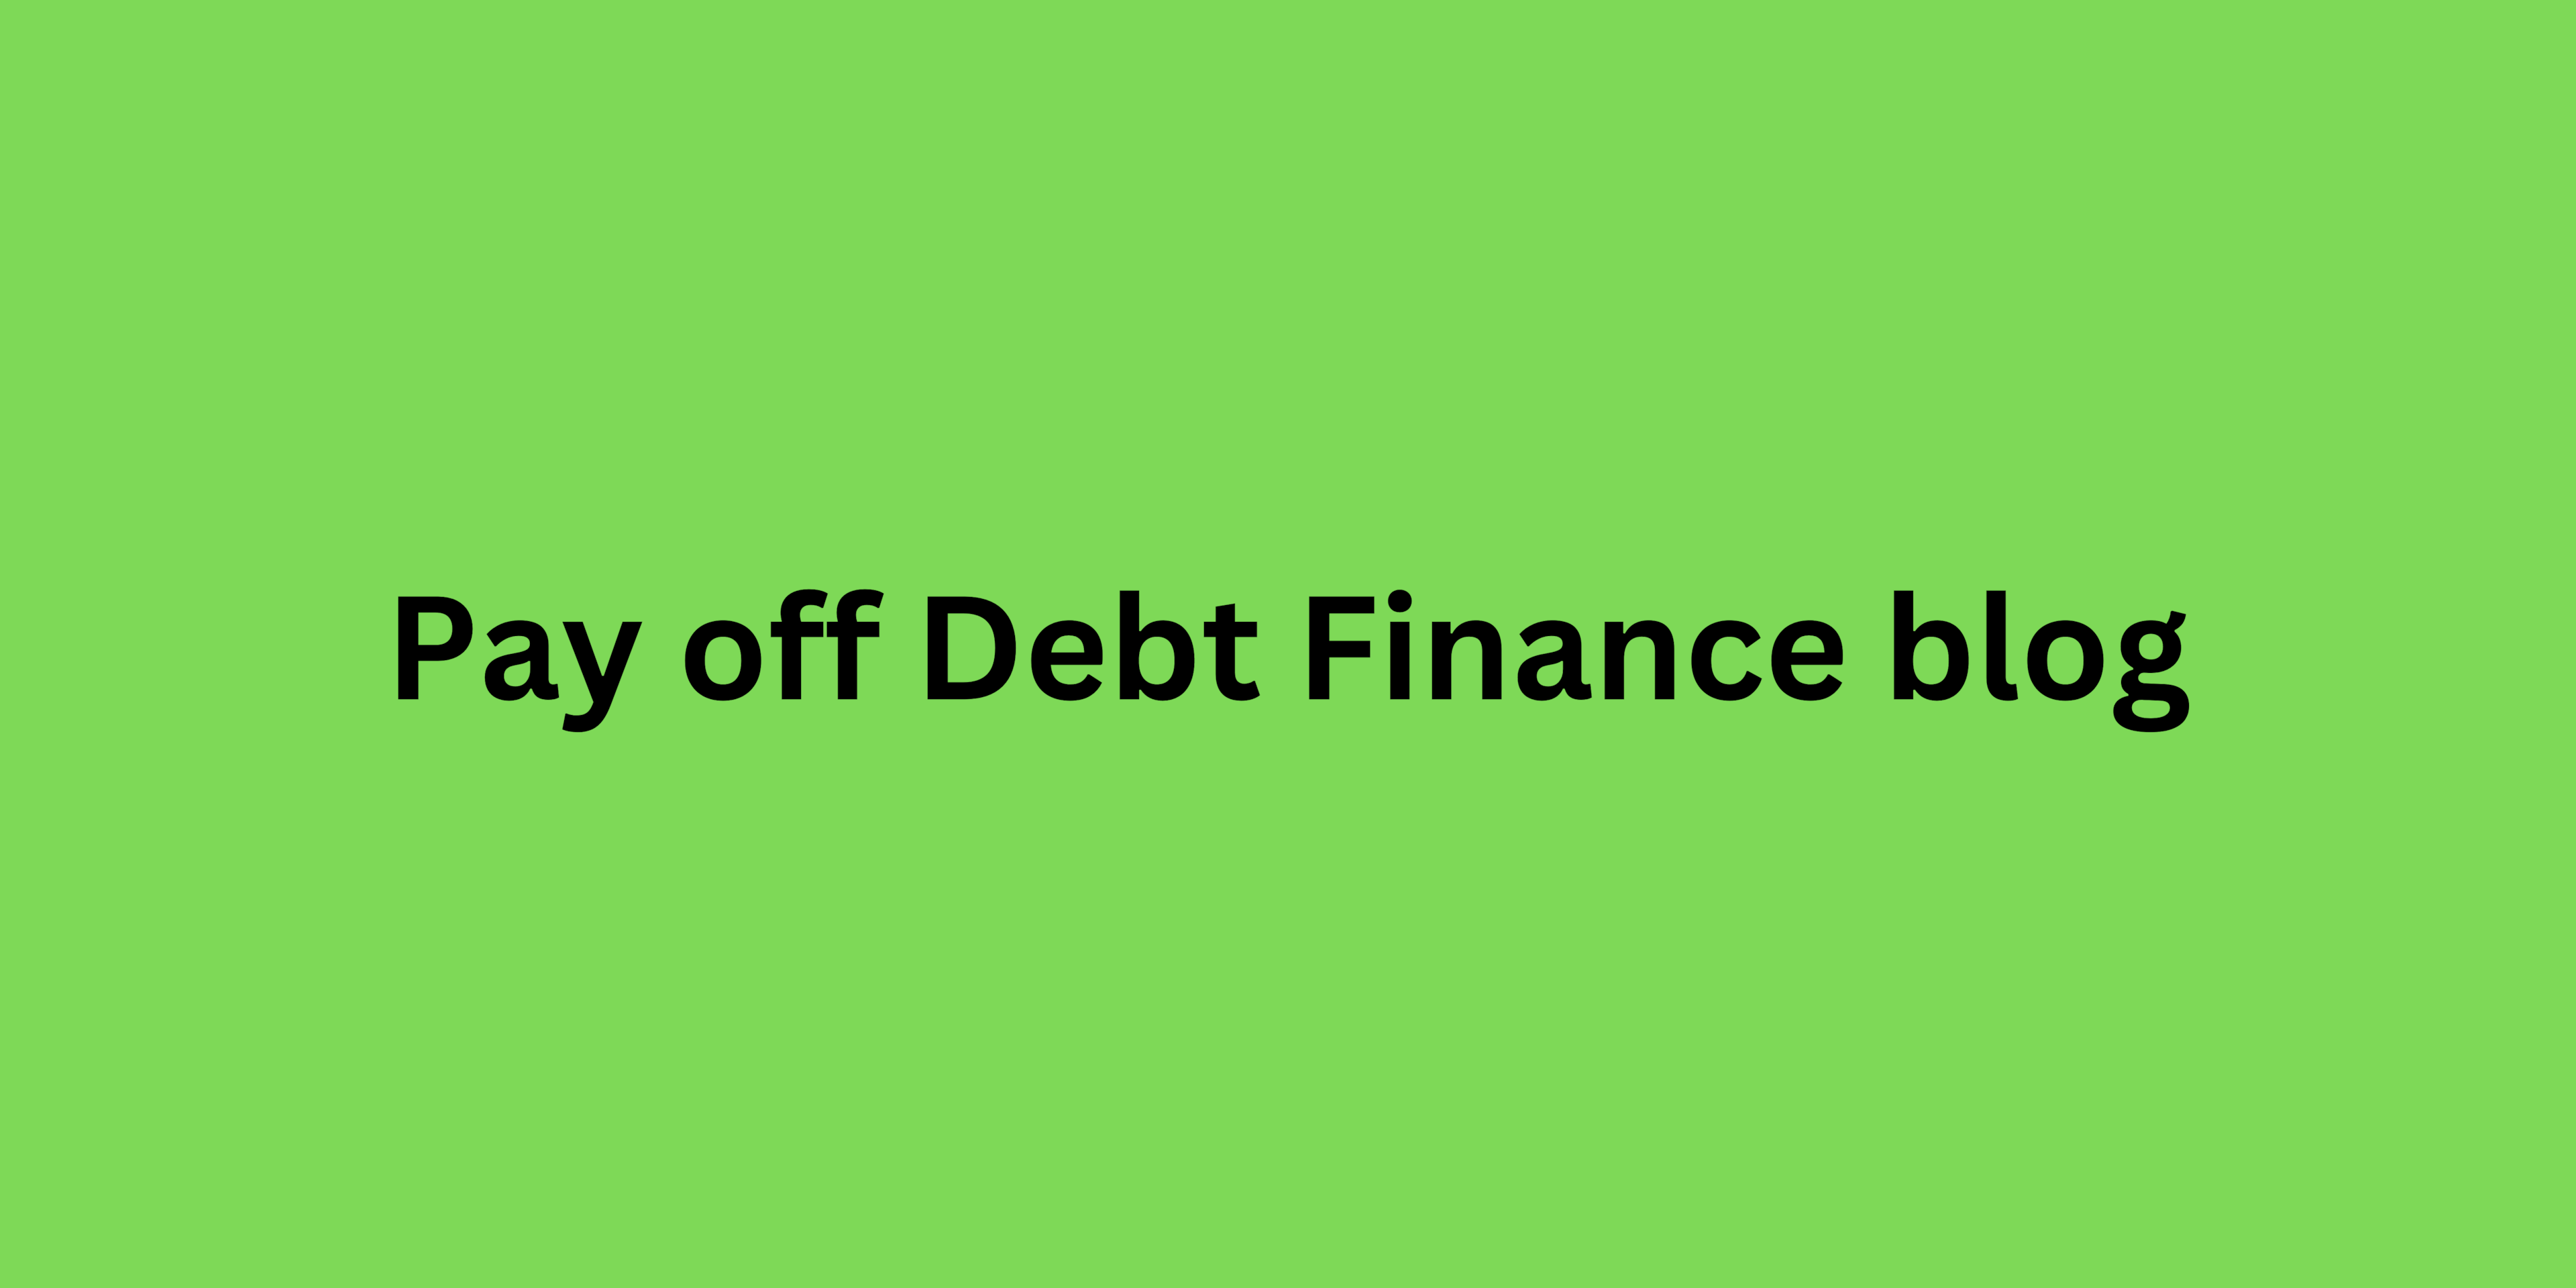 Pay off Debt Finance blog